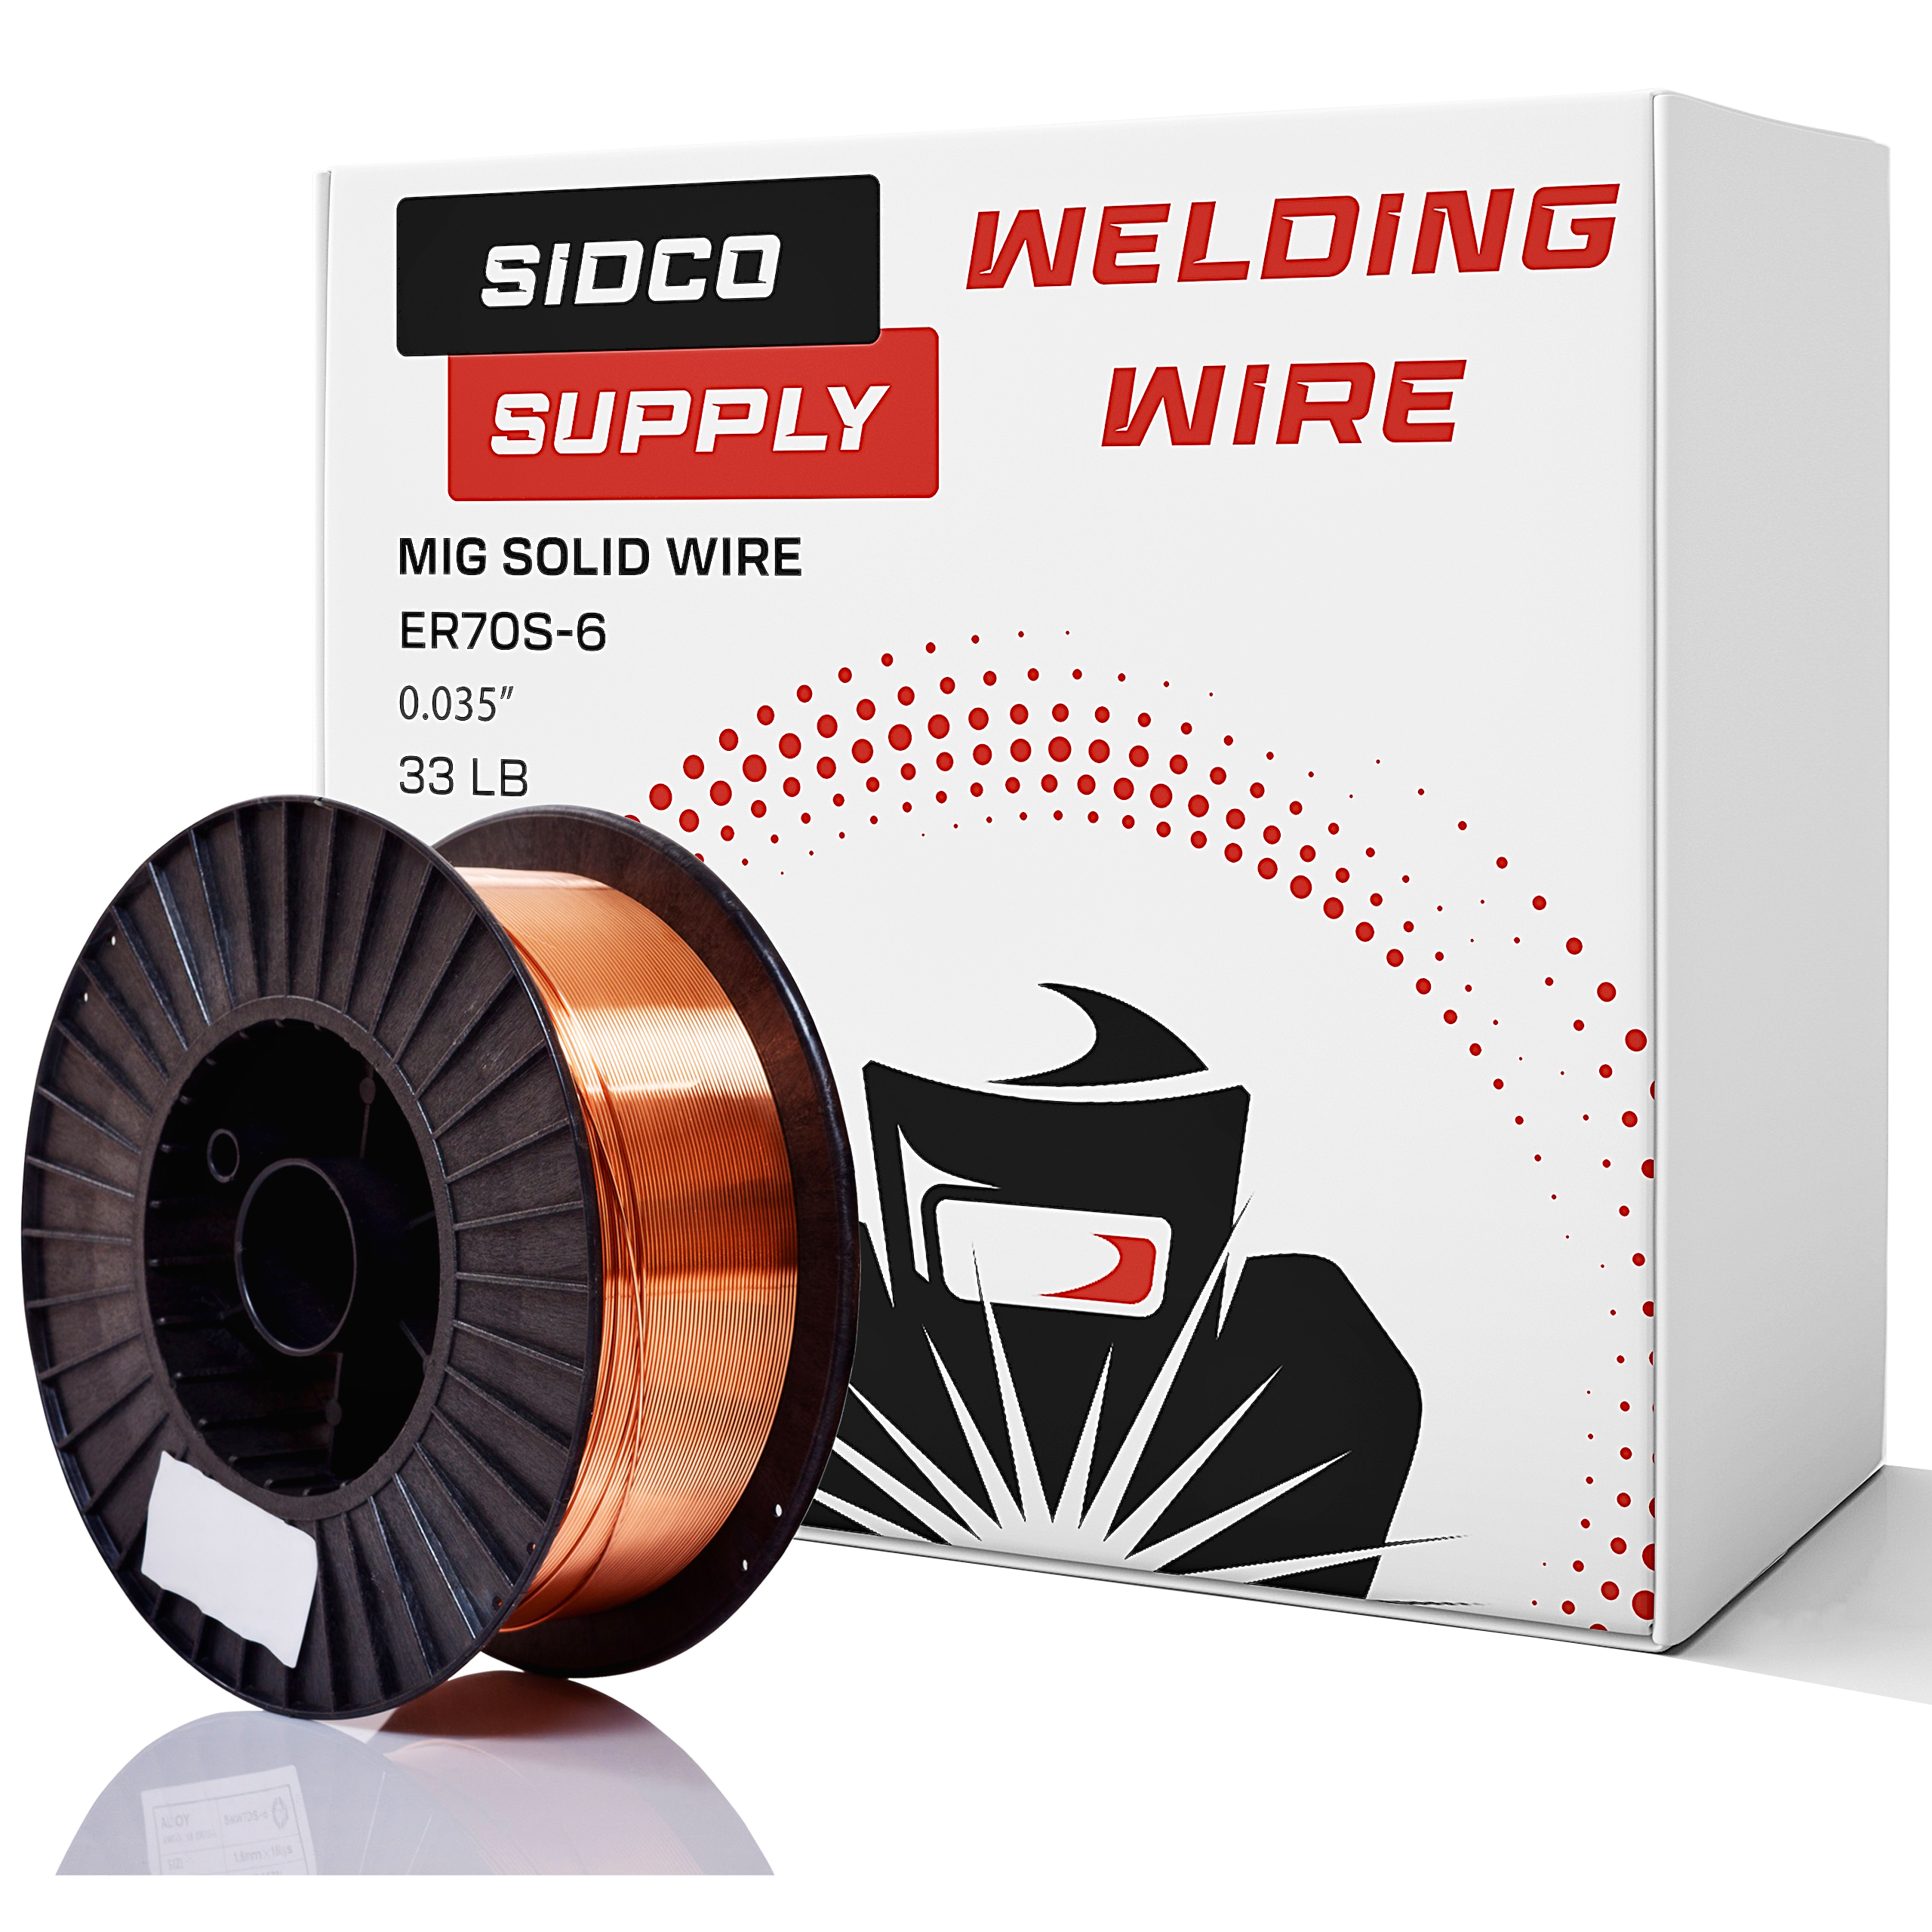 Solid MIG Welding Wire - ER70S-6-0.035 Inch, 33 LB Spool - Mild Steel